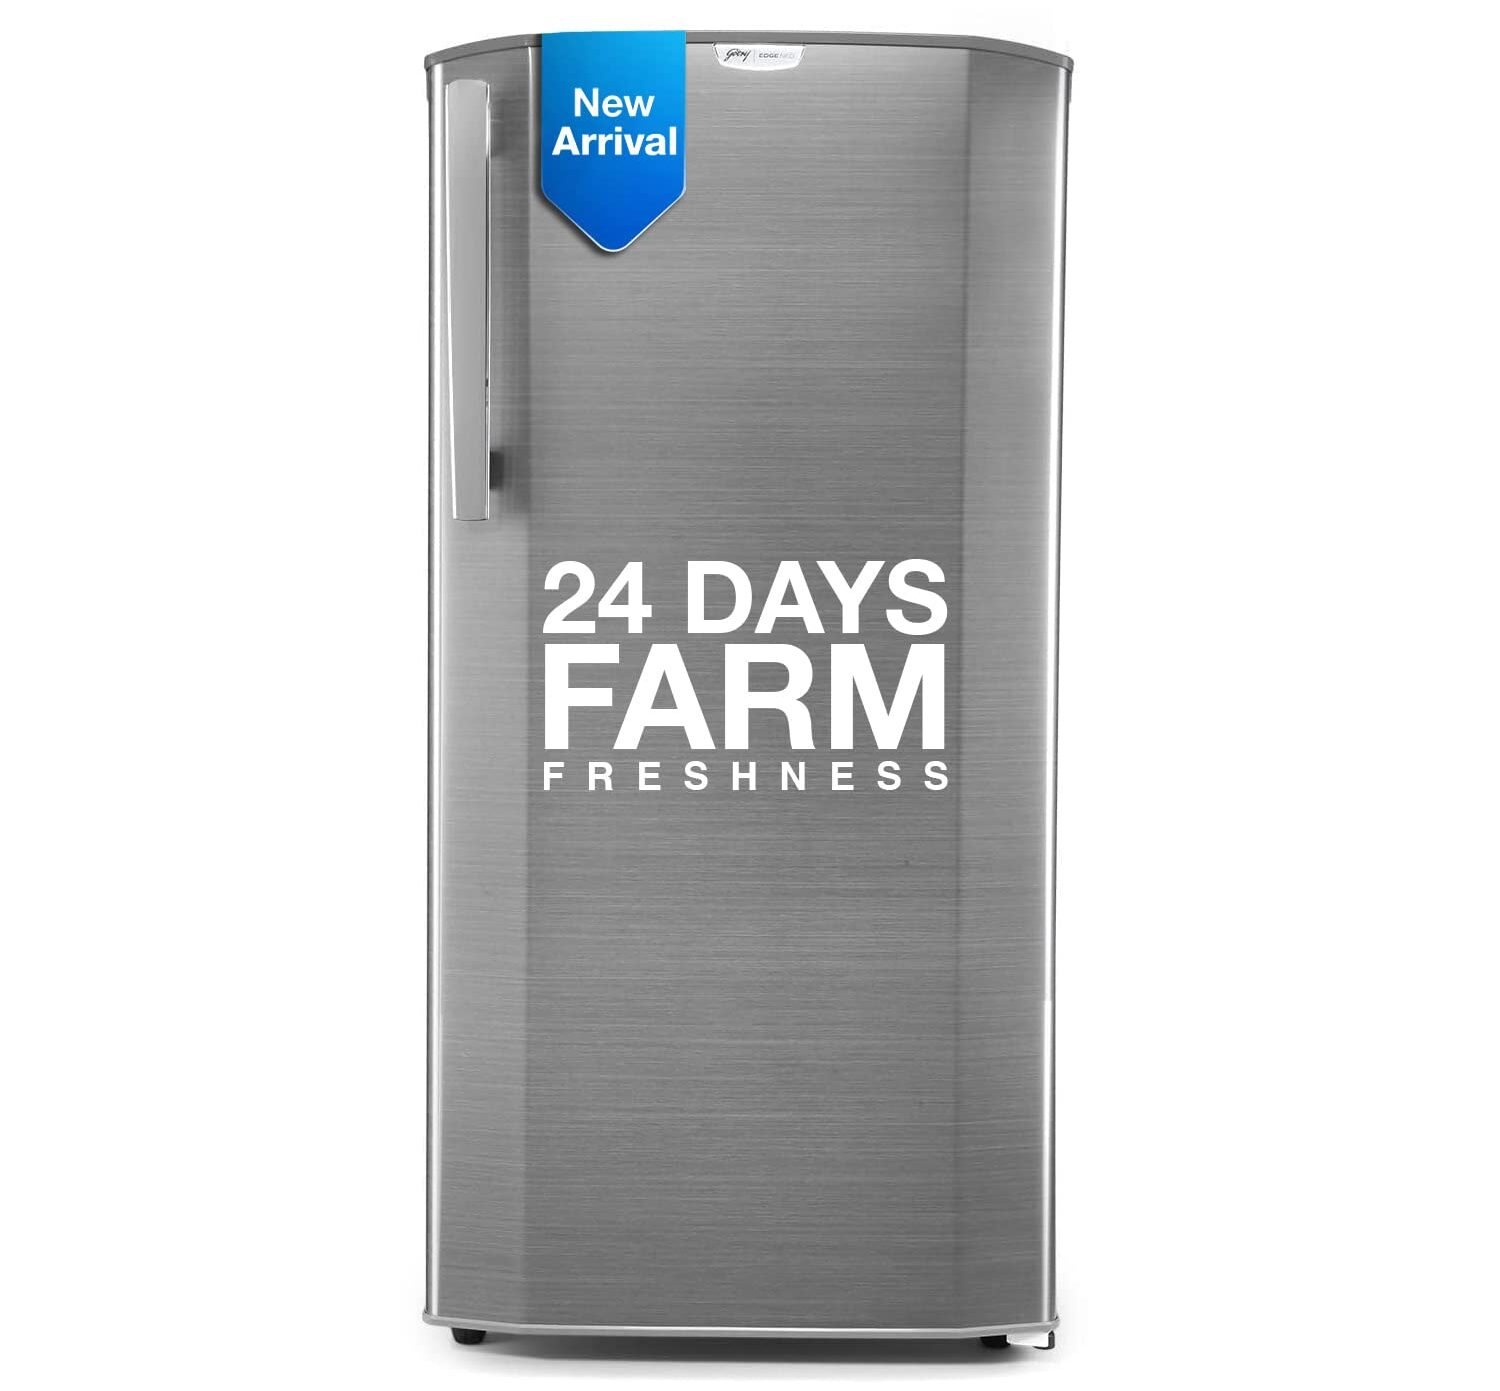 Godrej 180 L 5 Star Direct Cool Inverter Single Door Refrigerator